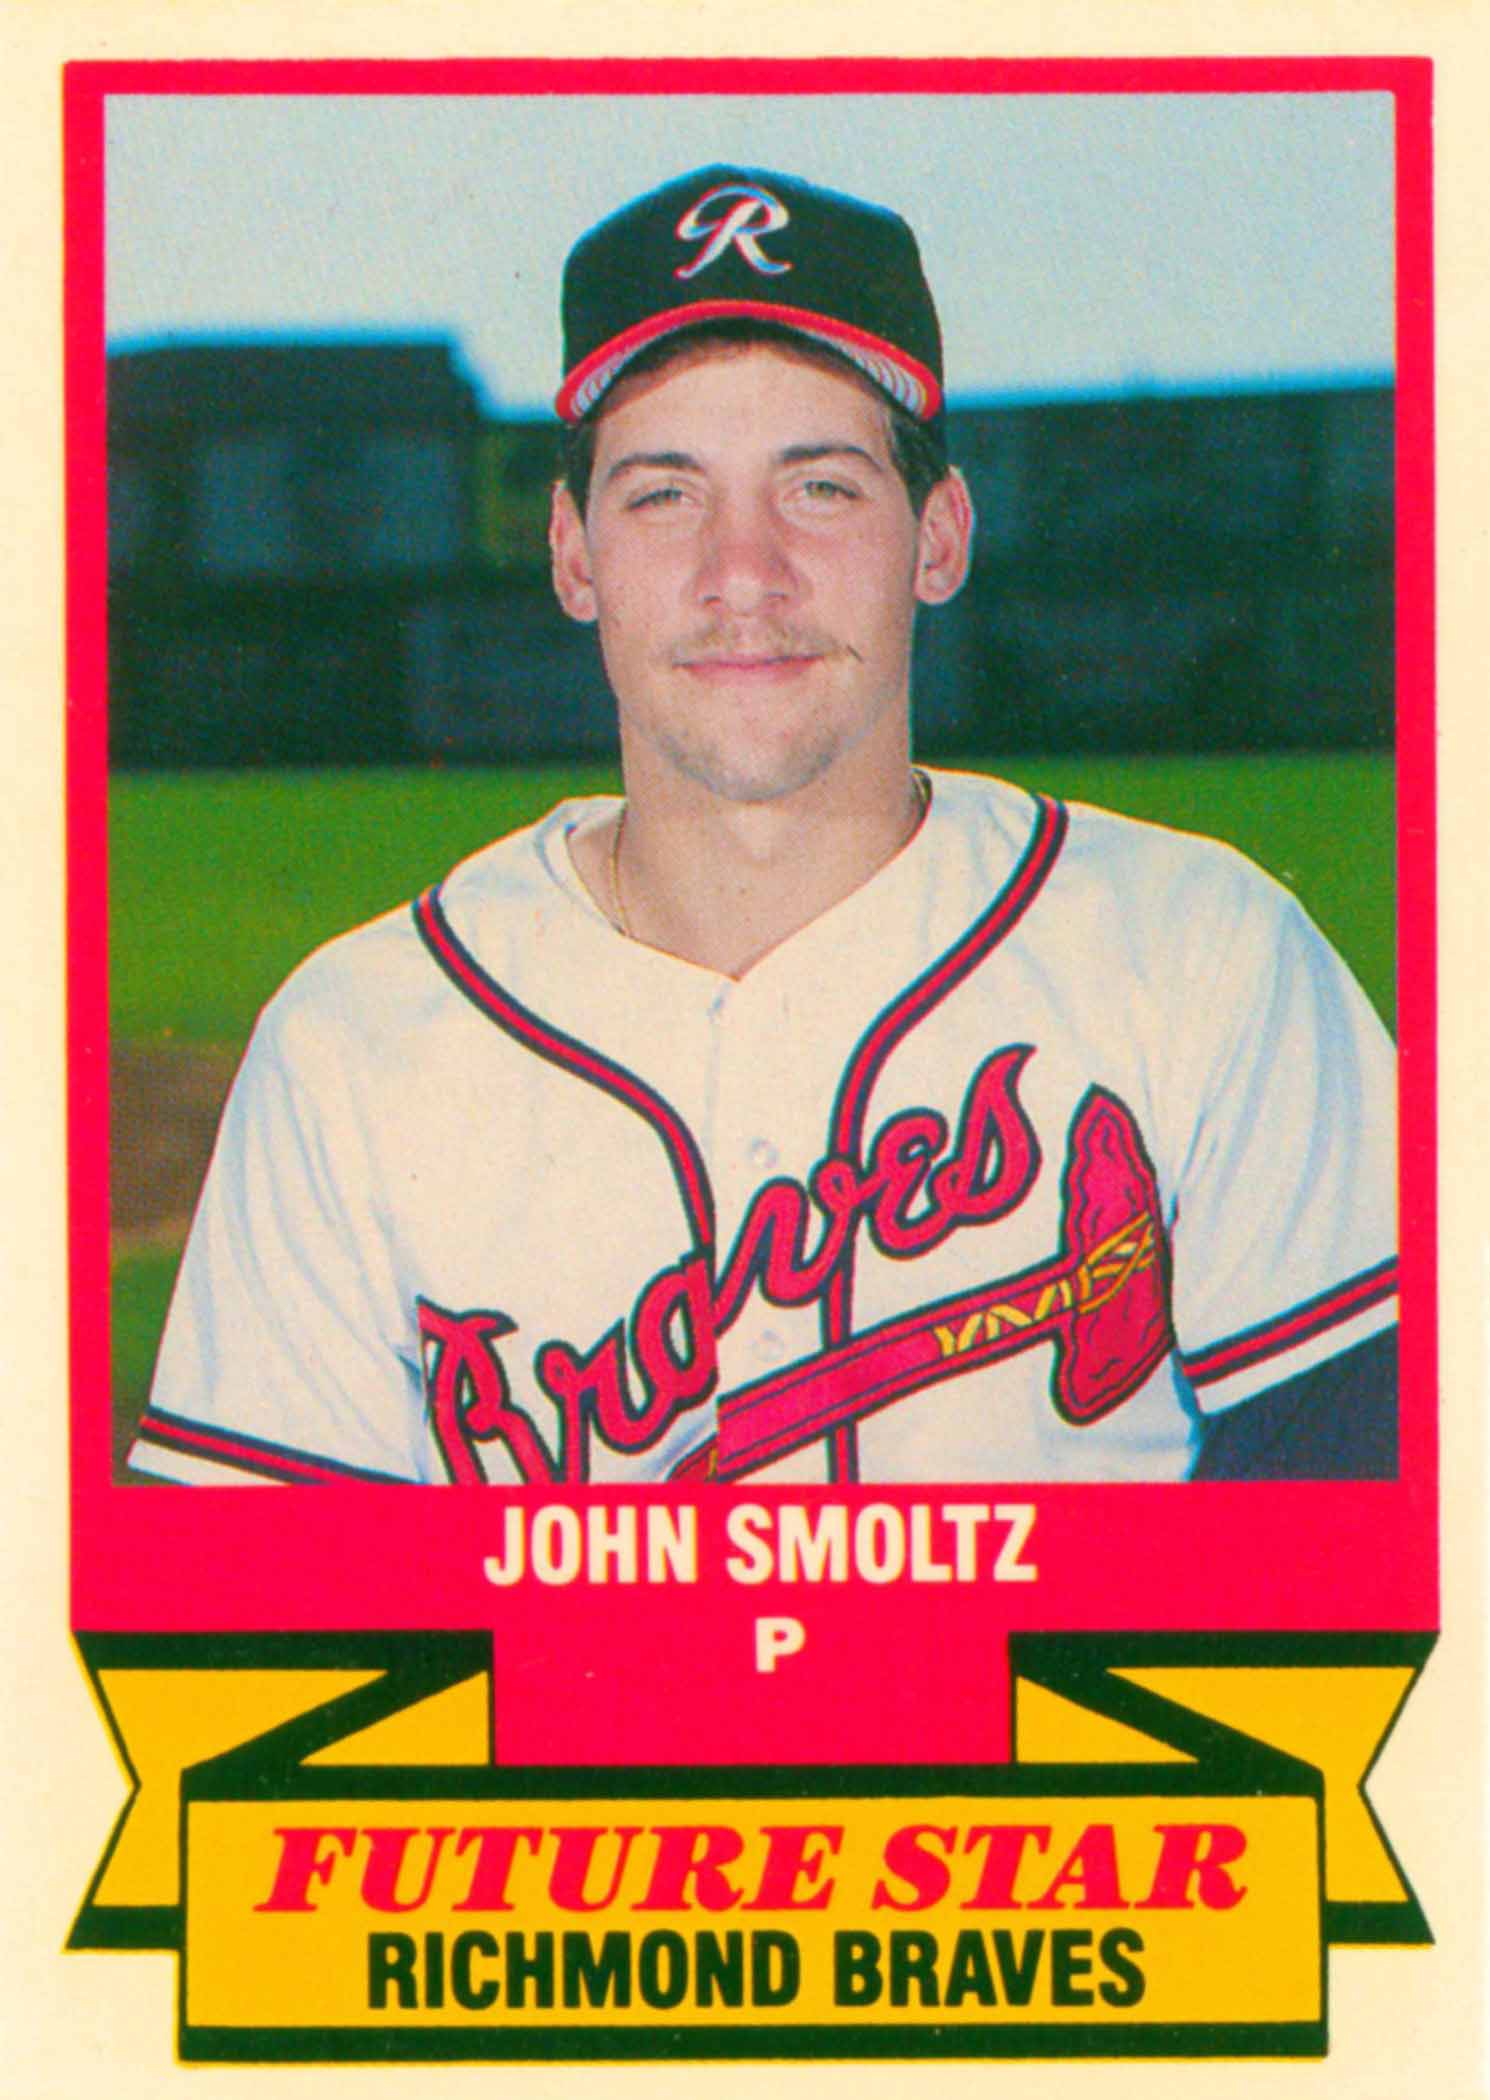 Flashback: John Smoltz as a St. Louis Cardinals Pitcher